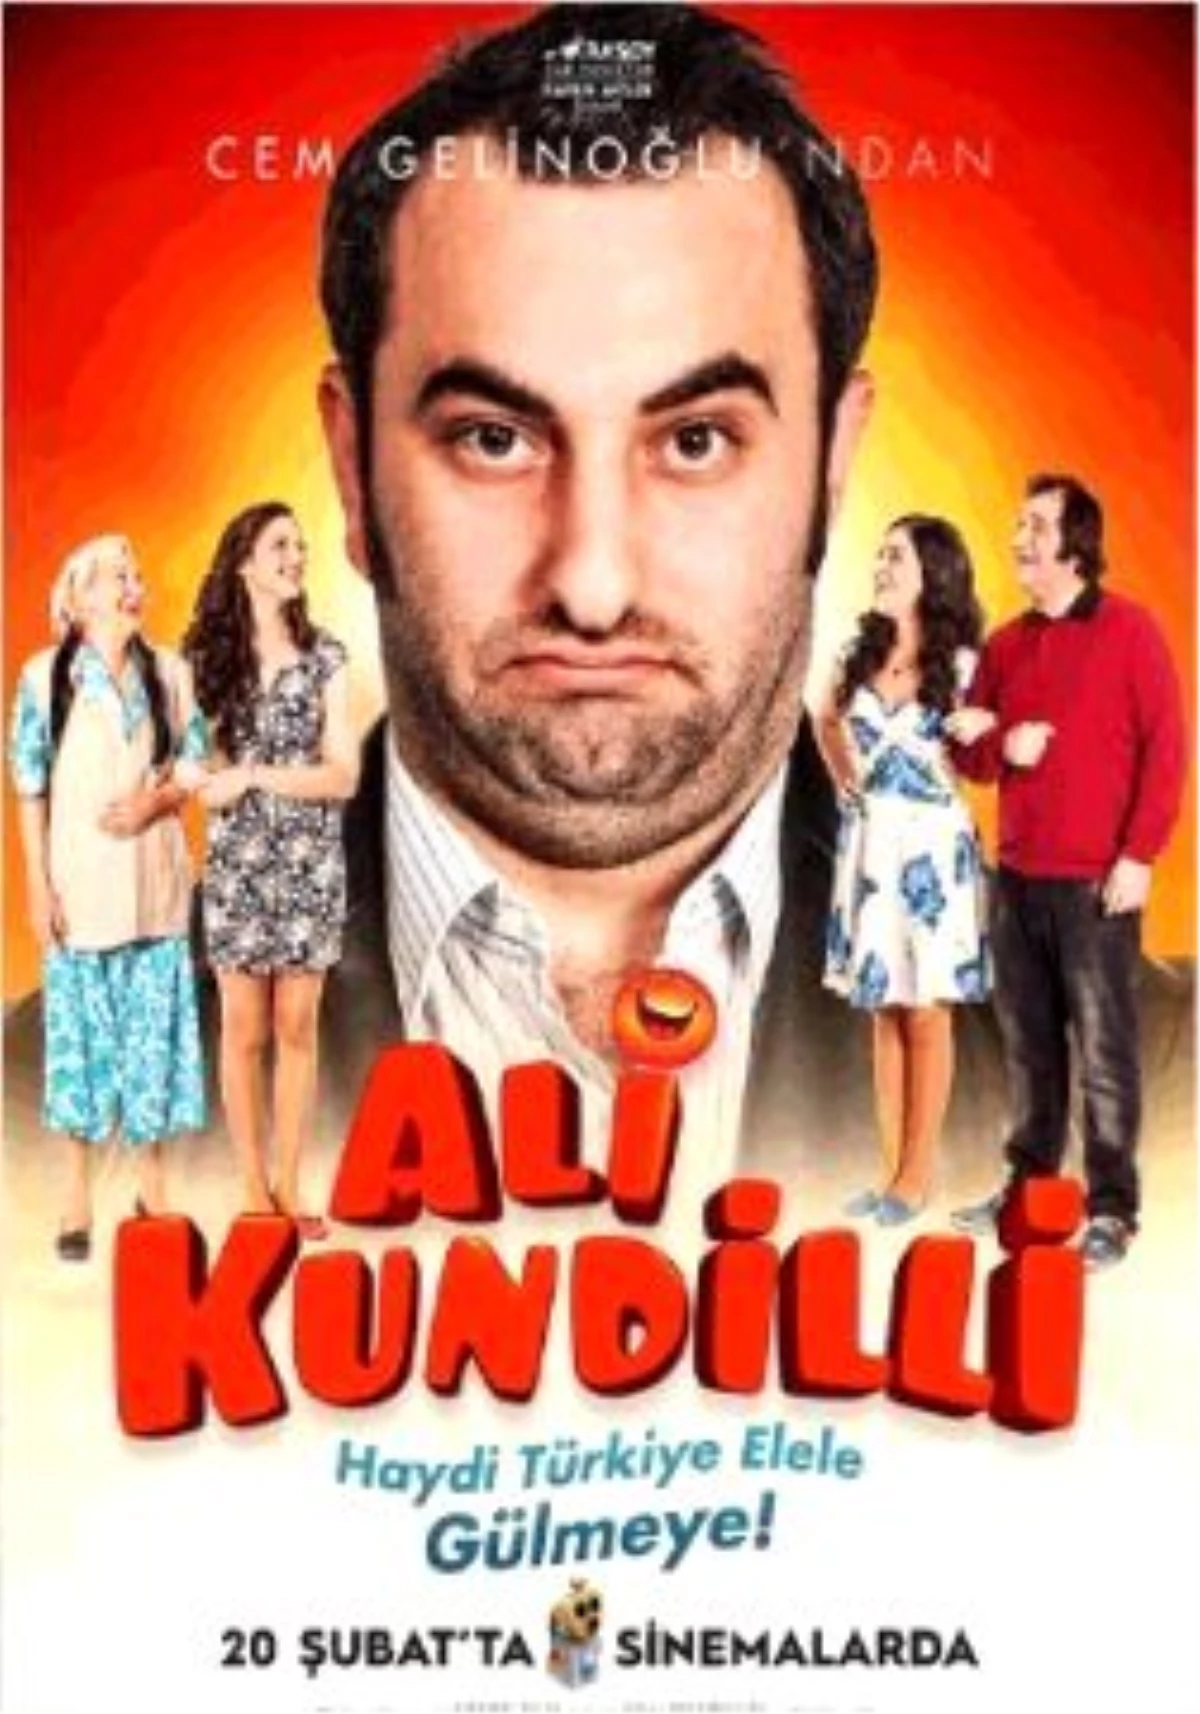 Ali Kundilli Filmi